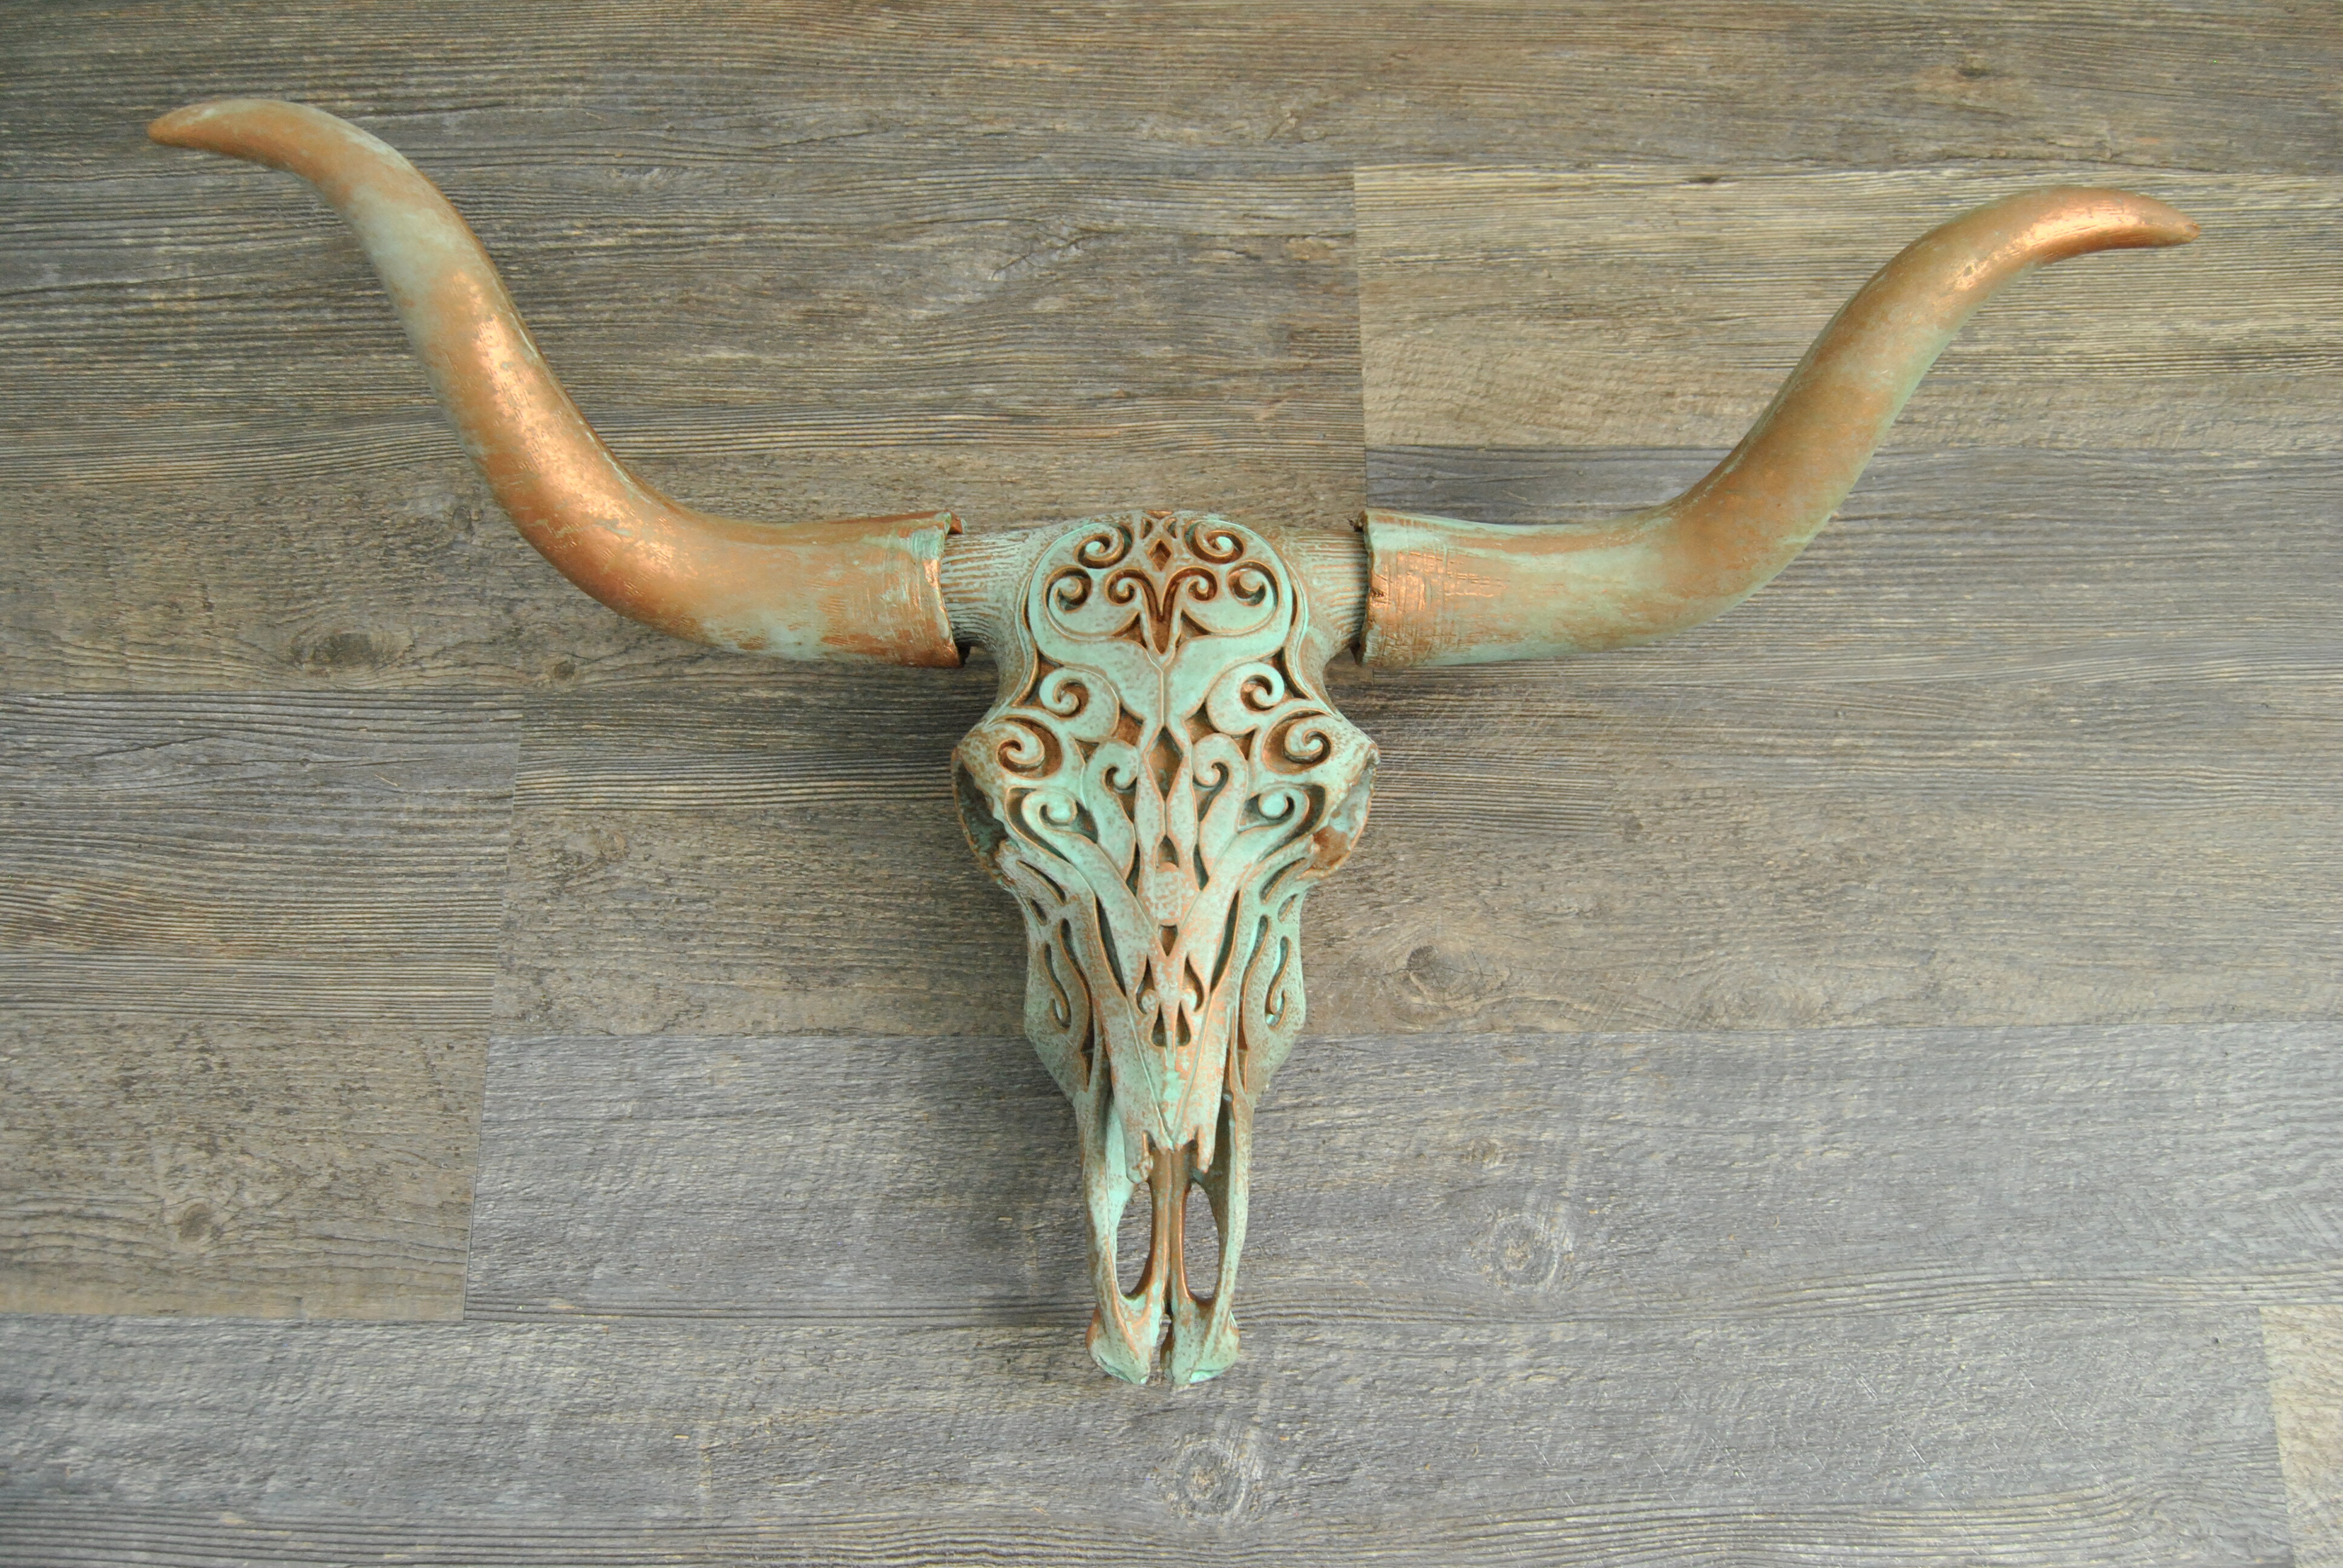 Engraved Tribal Steer Skull-Wall Mount Home Decor-Cow Cattle Bull Southwestern